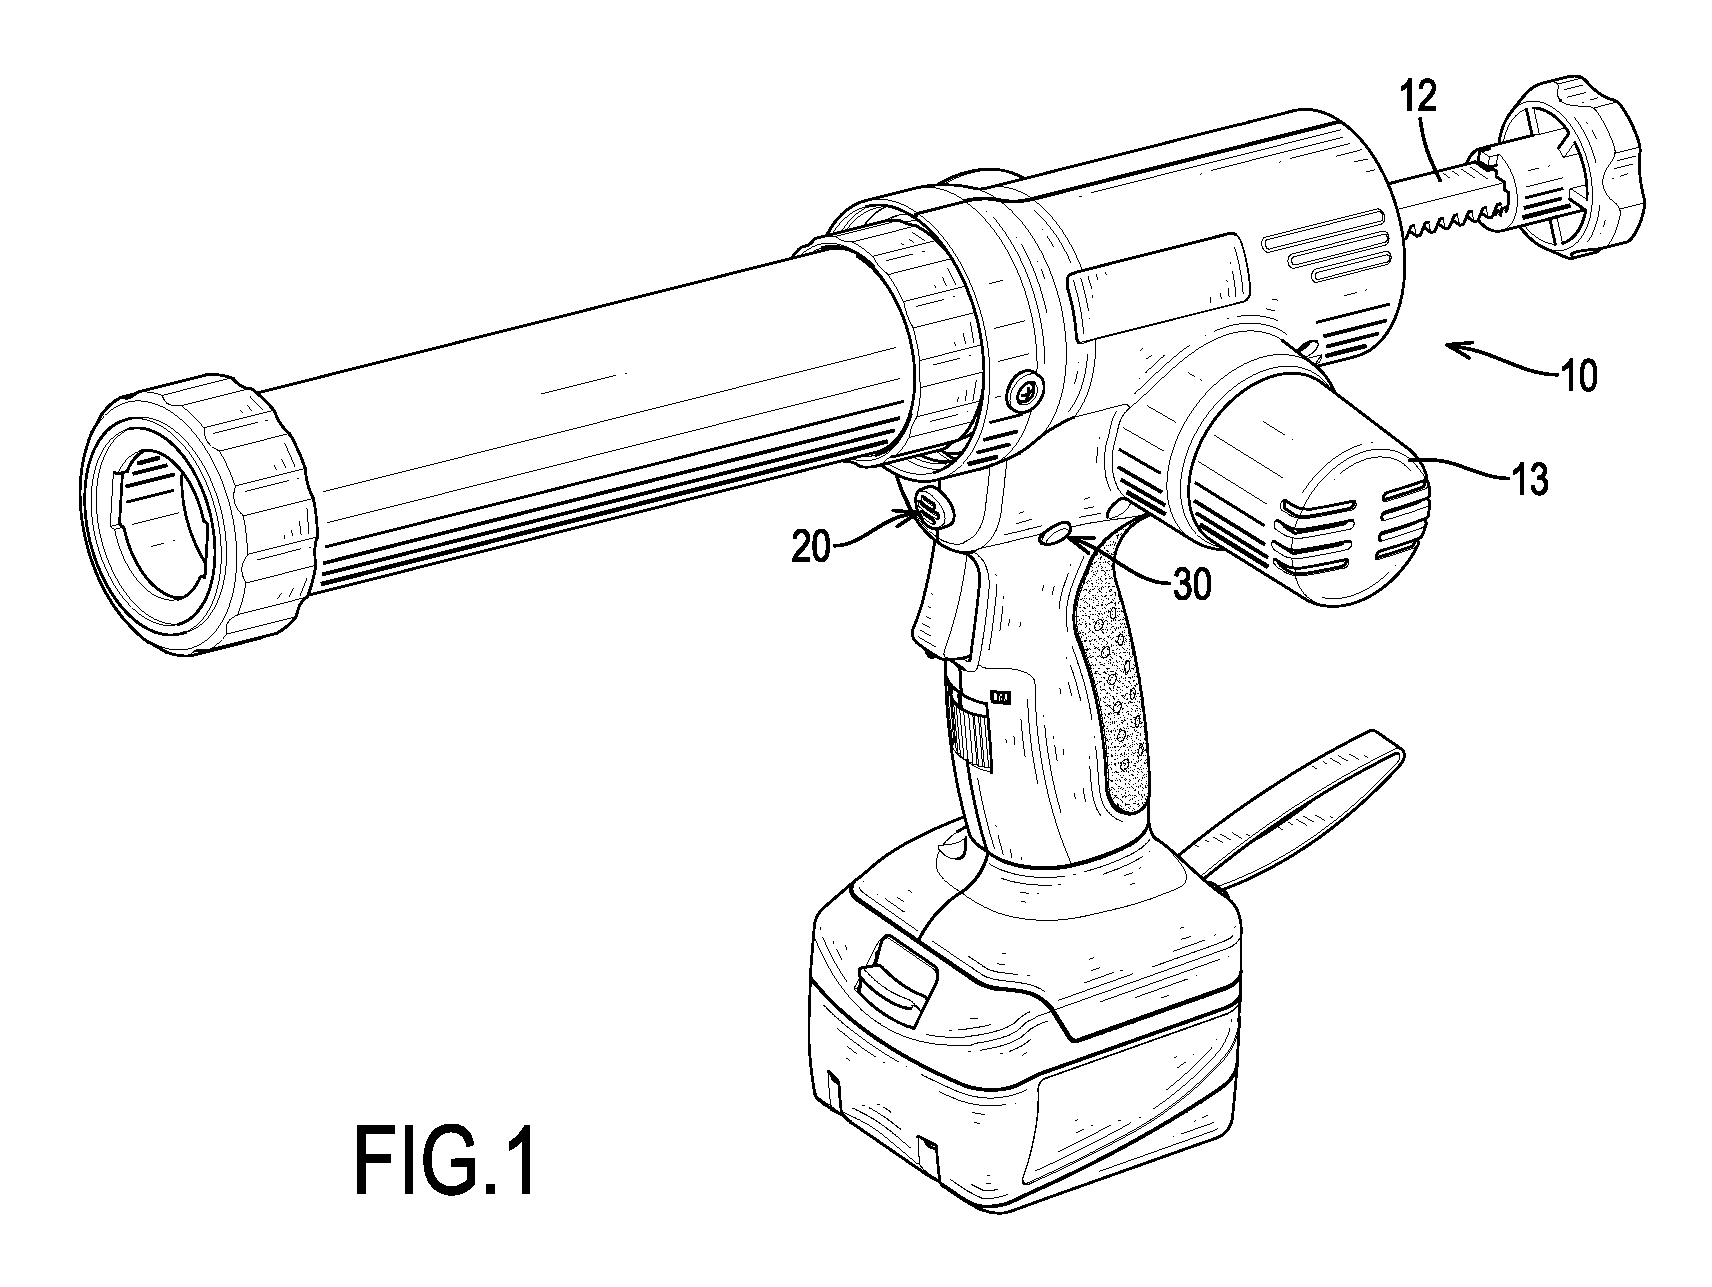 Electrical caulking gun